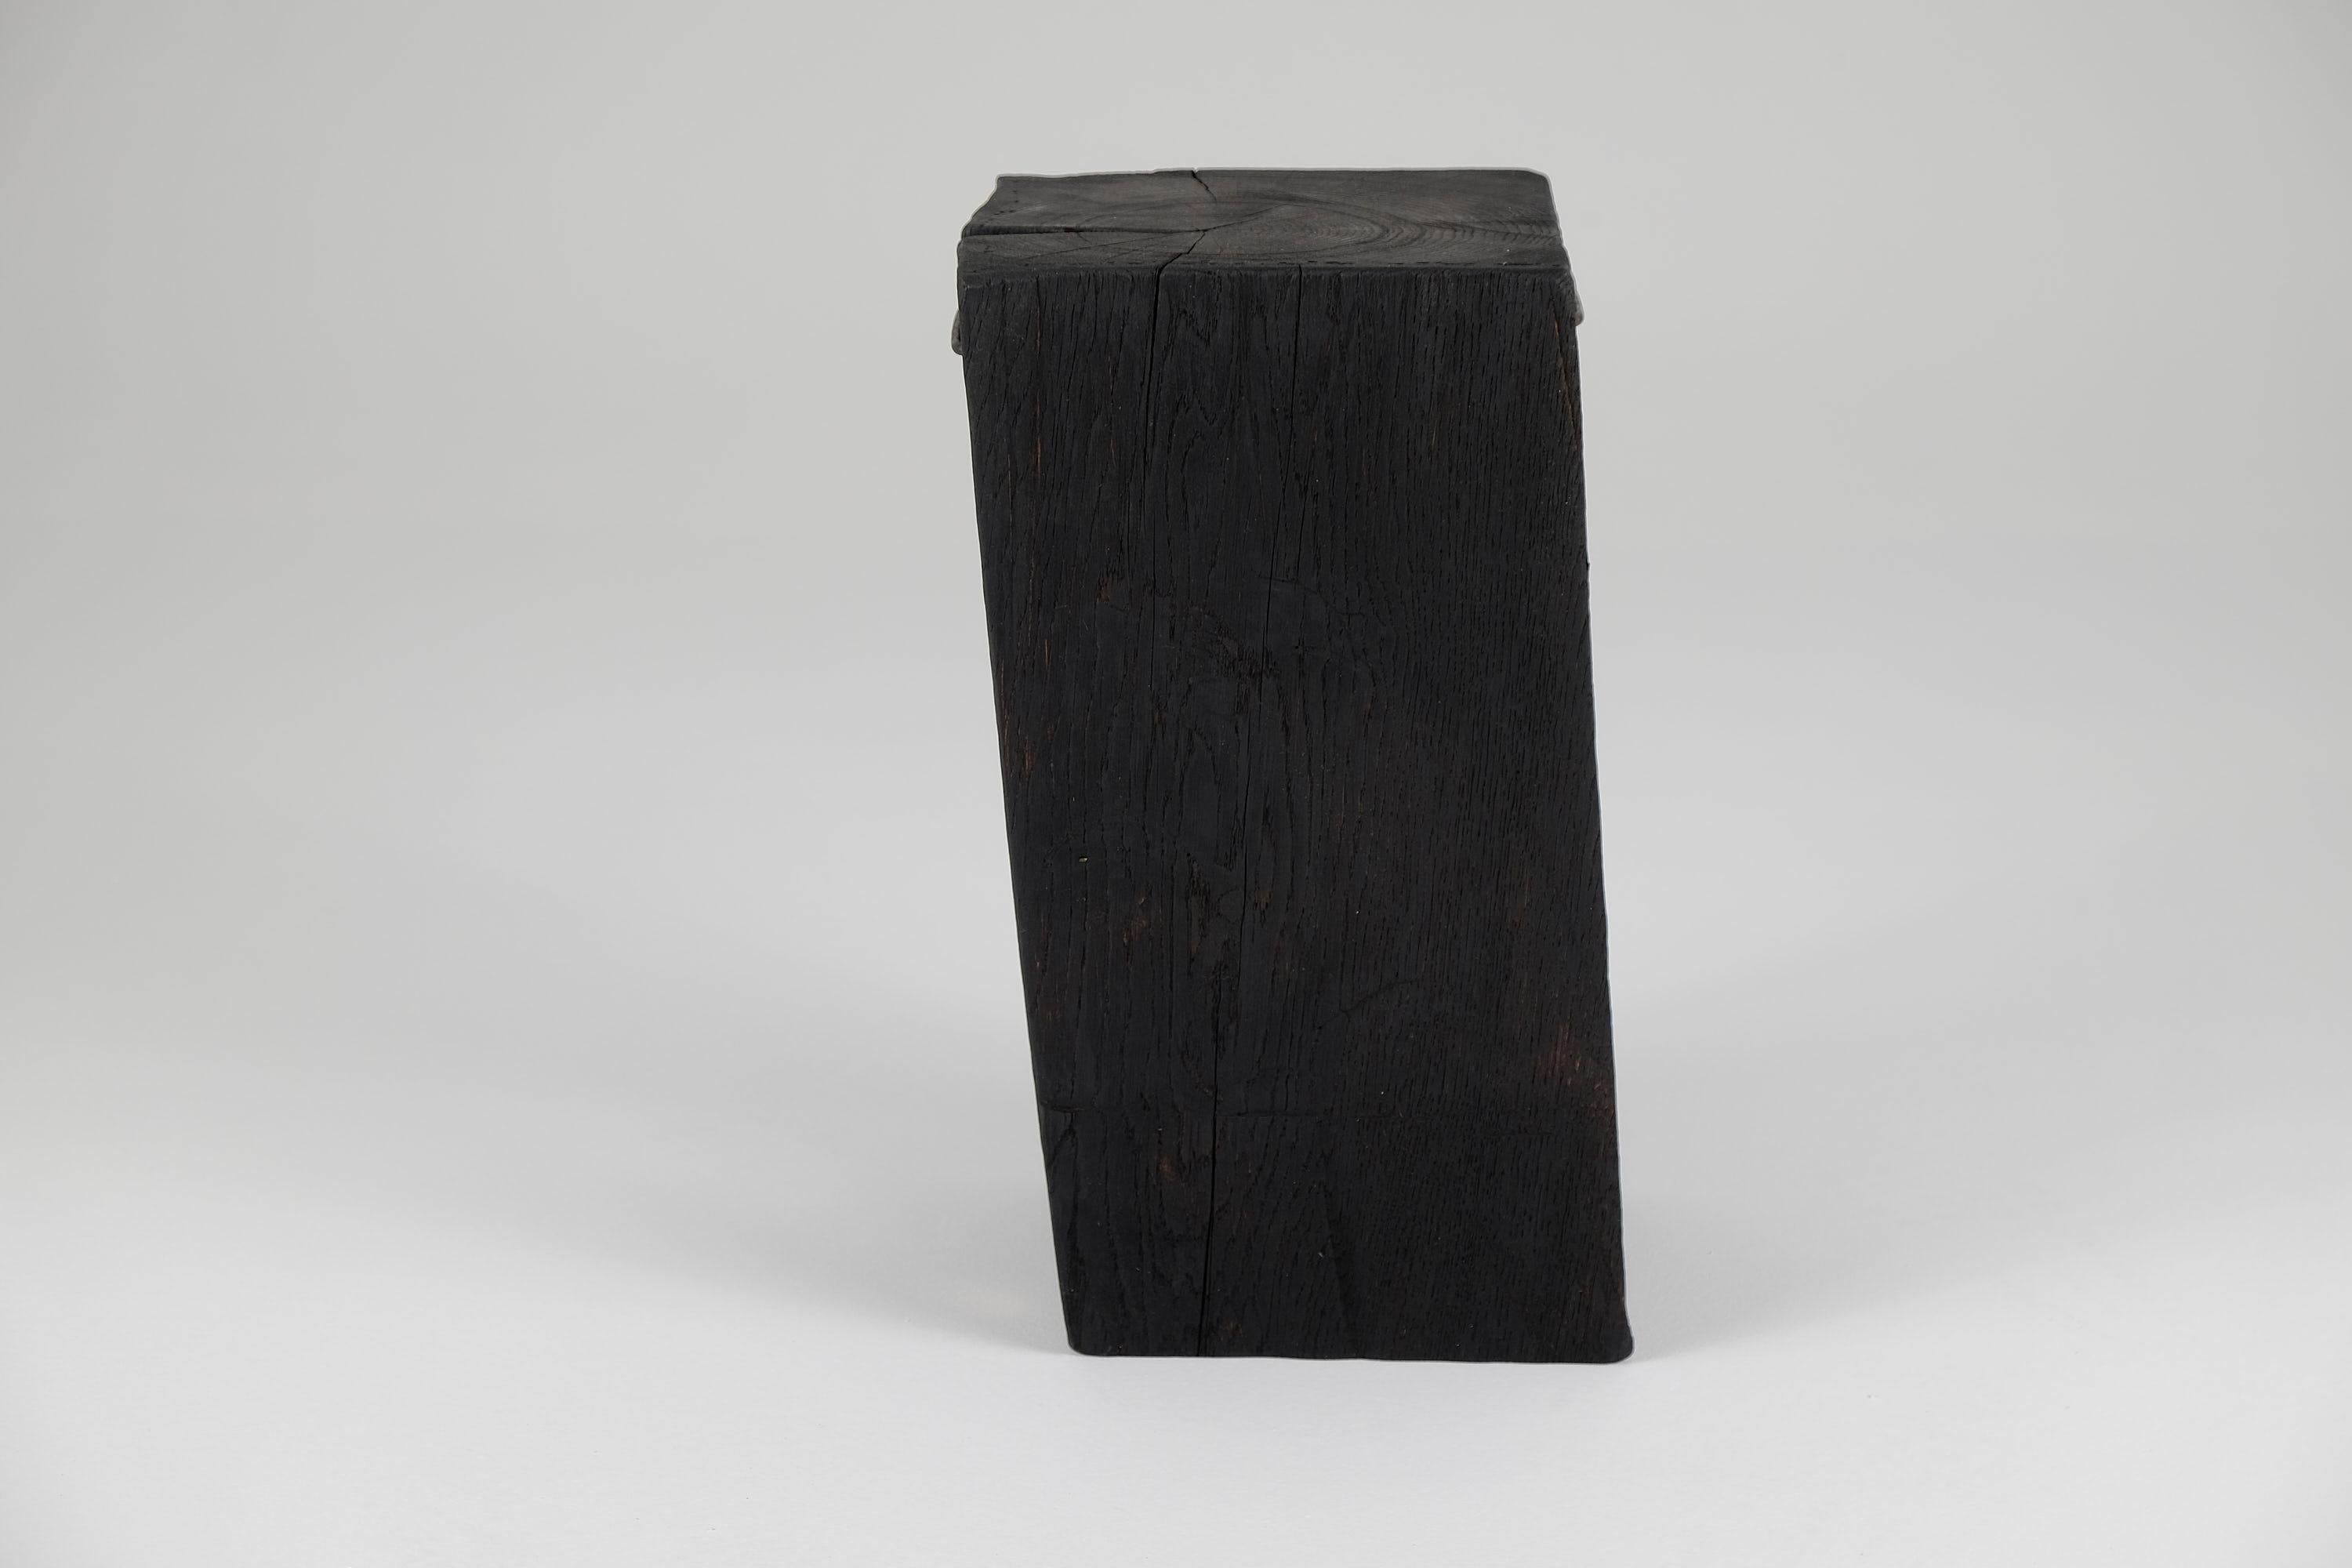 Carved Solid Burnt Wood, Side Table, Stool, Primative Design, Brutalist For Sale